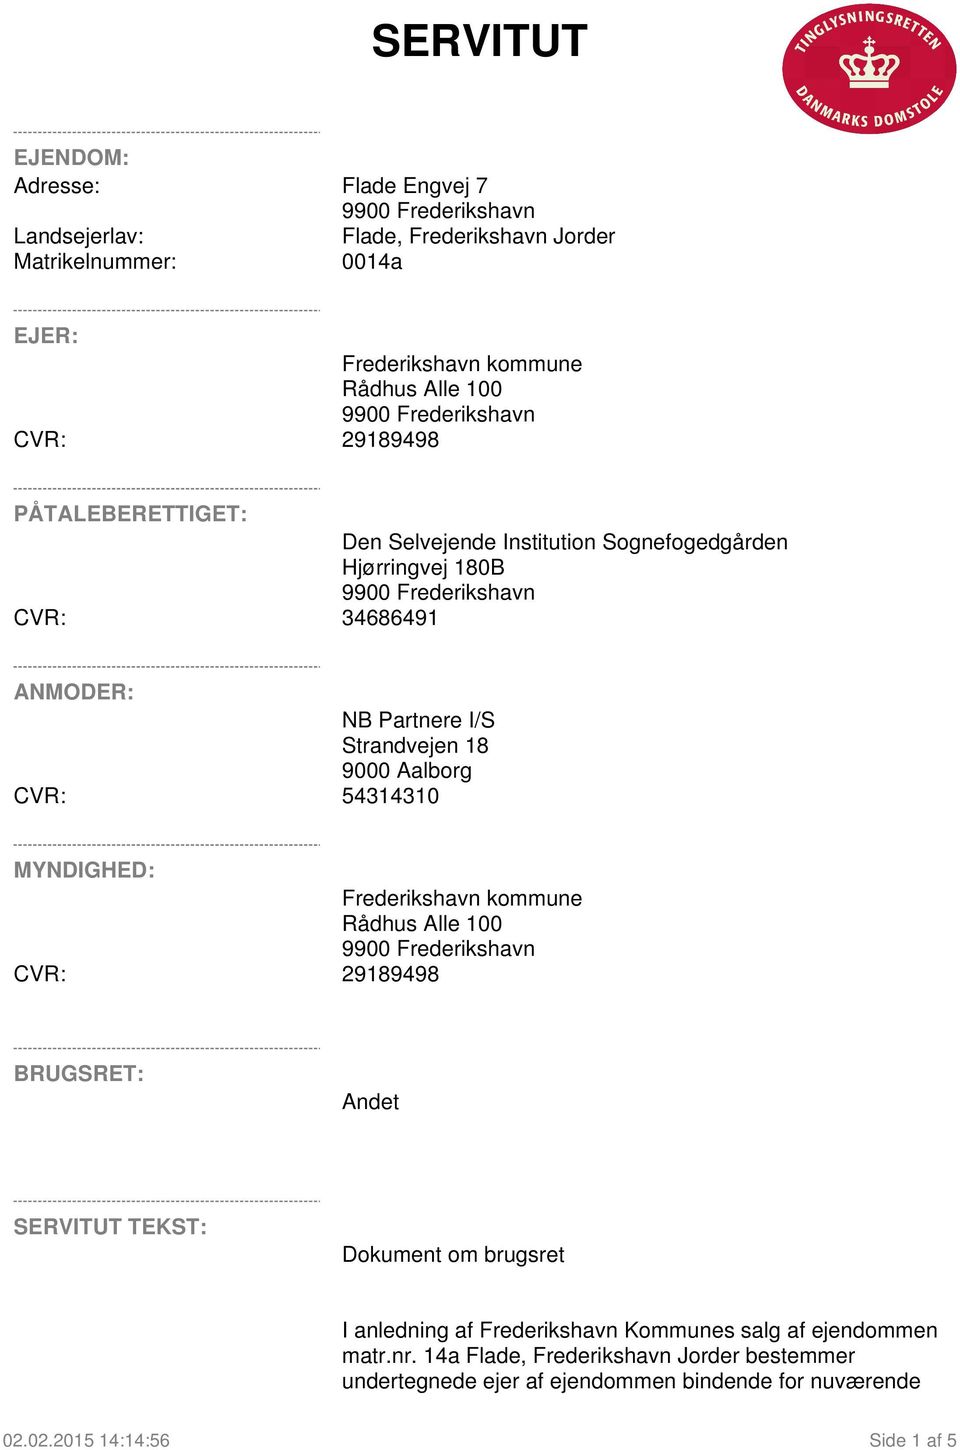 CVR: 54314310 MYNDIGHED: Frederikshavn kommune Rådhus Alle 100 CVR: 29189498 BRUGSRET: Andet SERVITUT TEKST: Dokument om brugsret I anledning af Frederikshavn